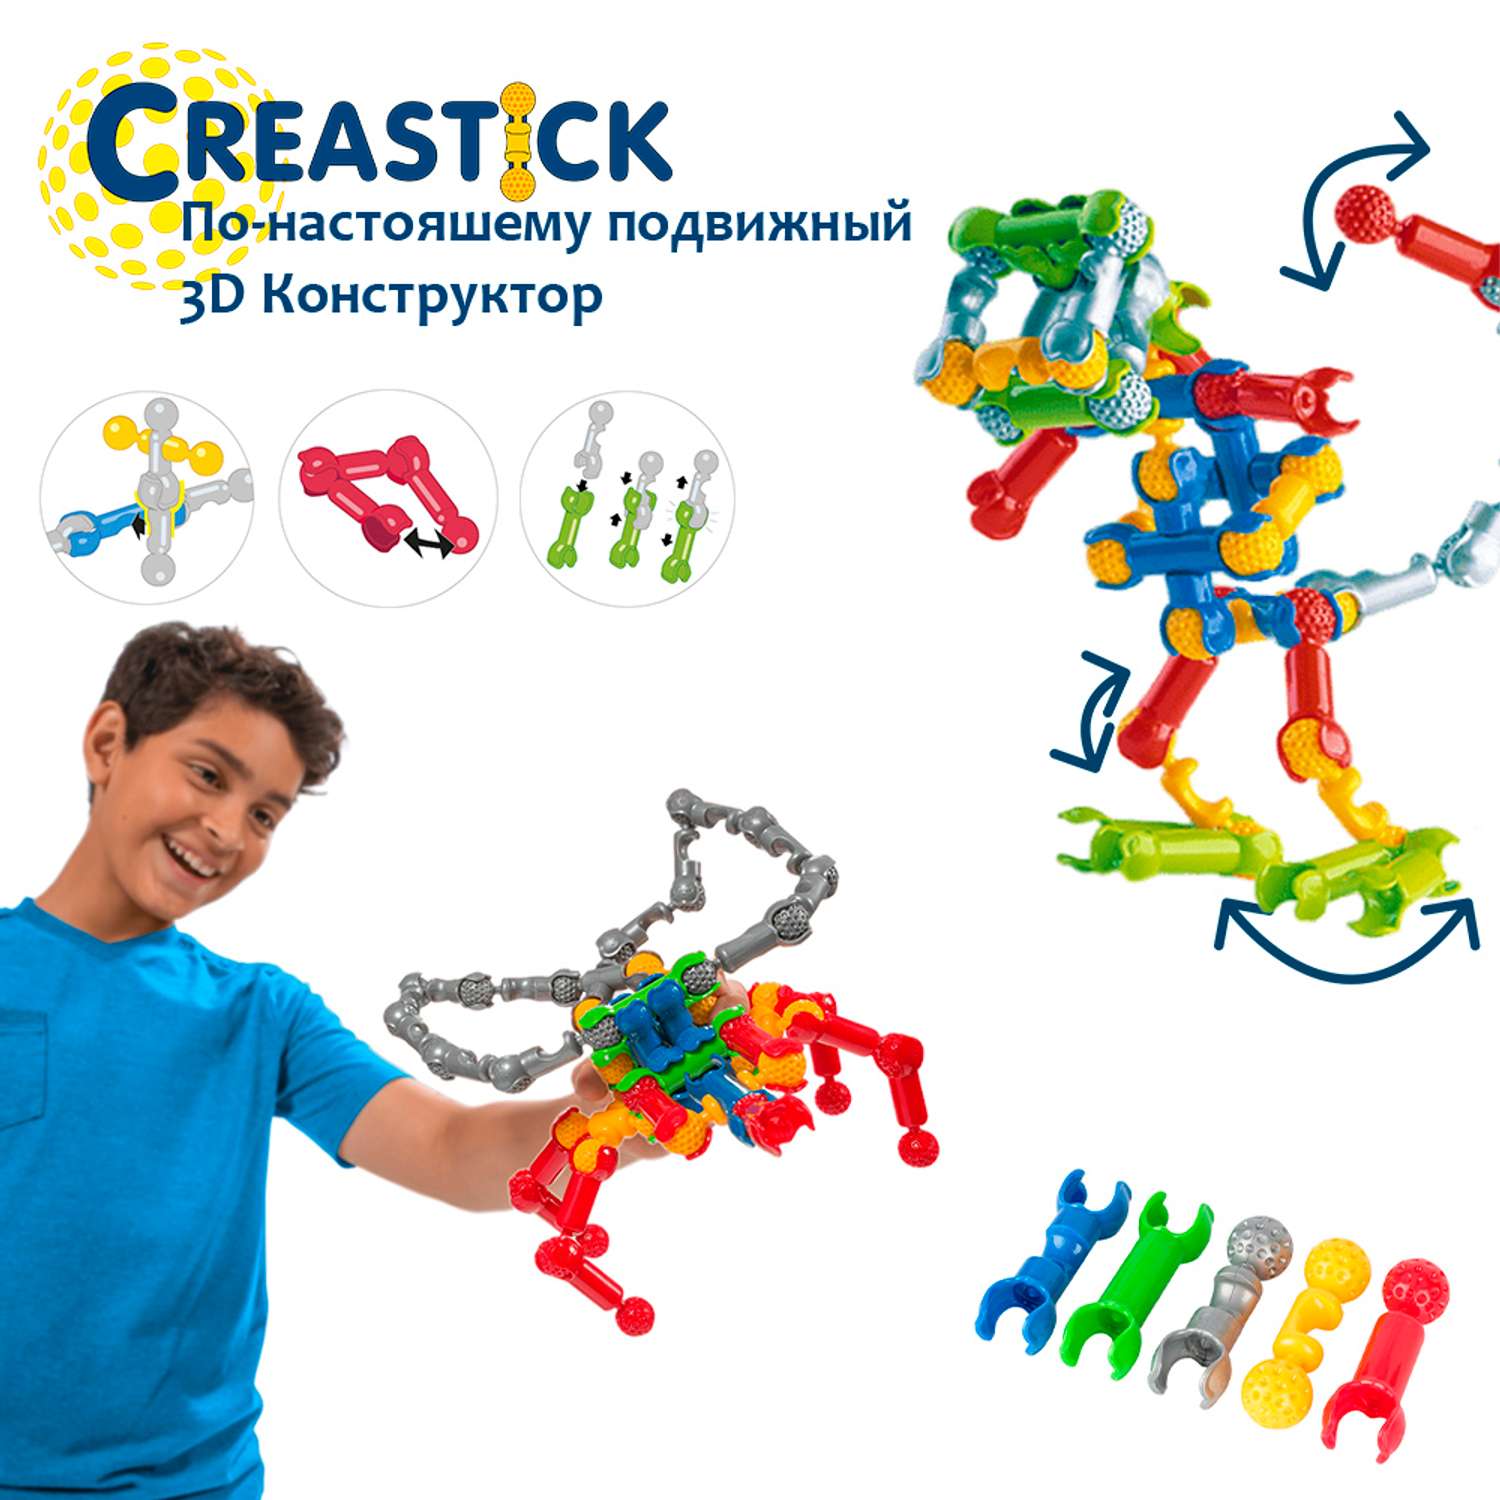 3D конструктор CREASTICK с подвижными соединениями - фото 1